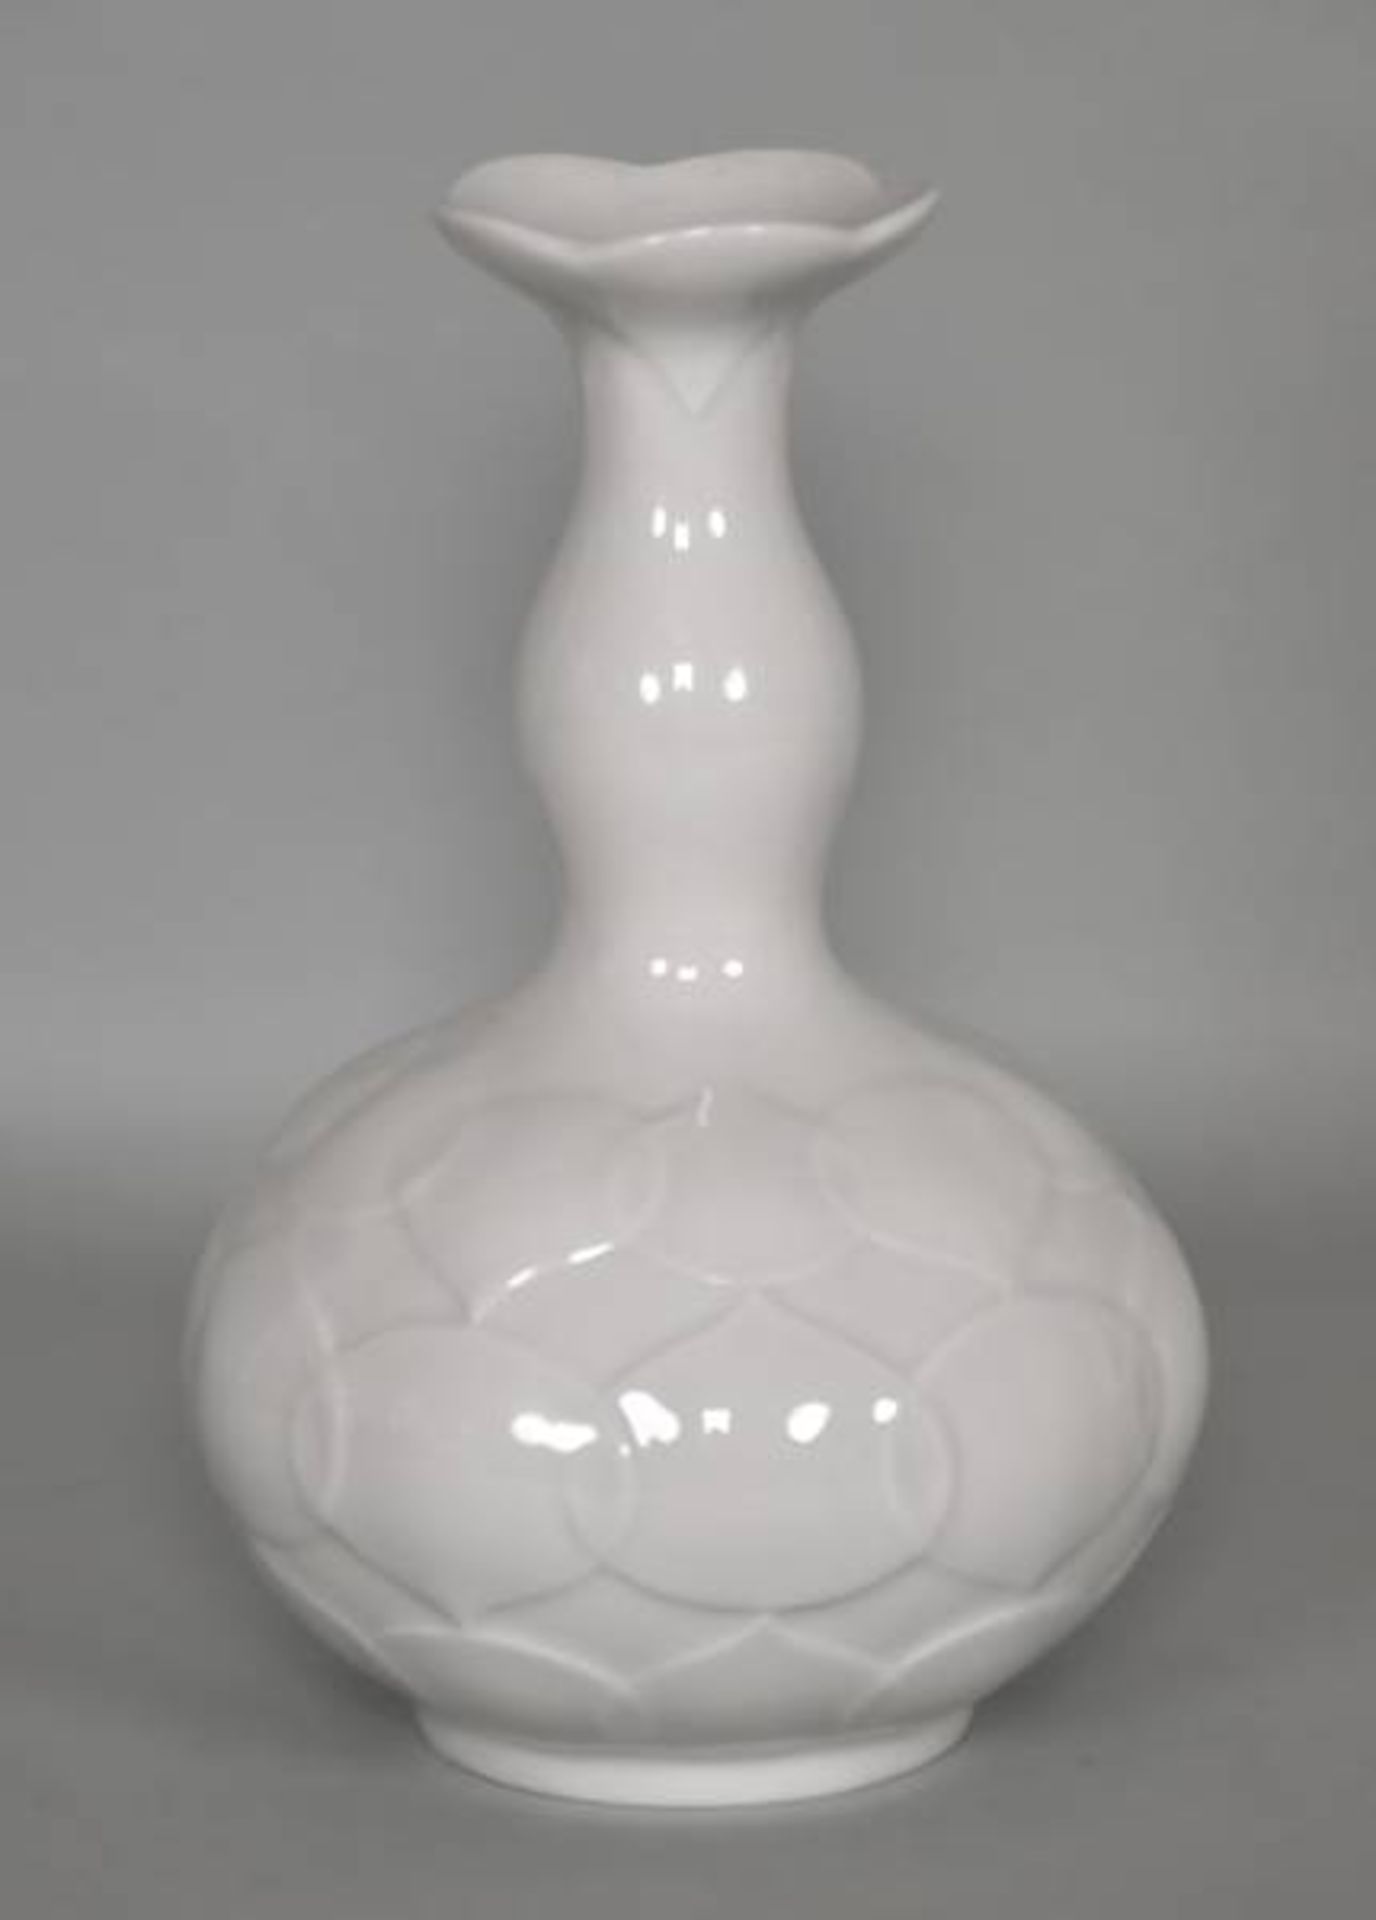 VASE Meissen, gebaucht,mit langem Hals, Wandung mit modernem Dekor, Weißporzellan glasiert,VASE - Bild 2 aus 3